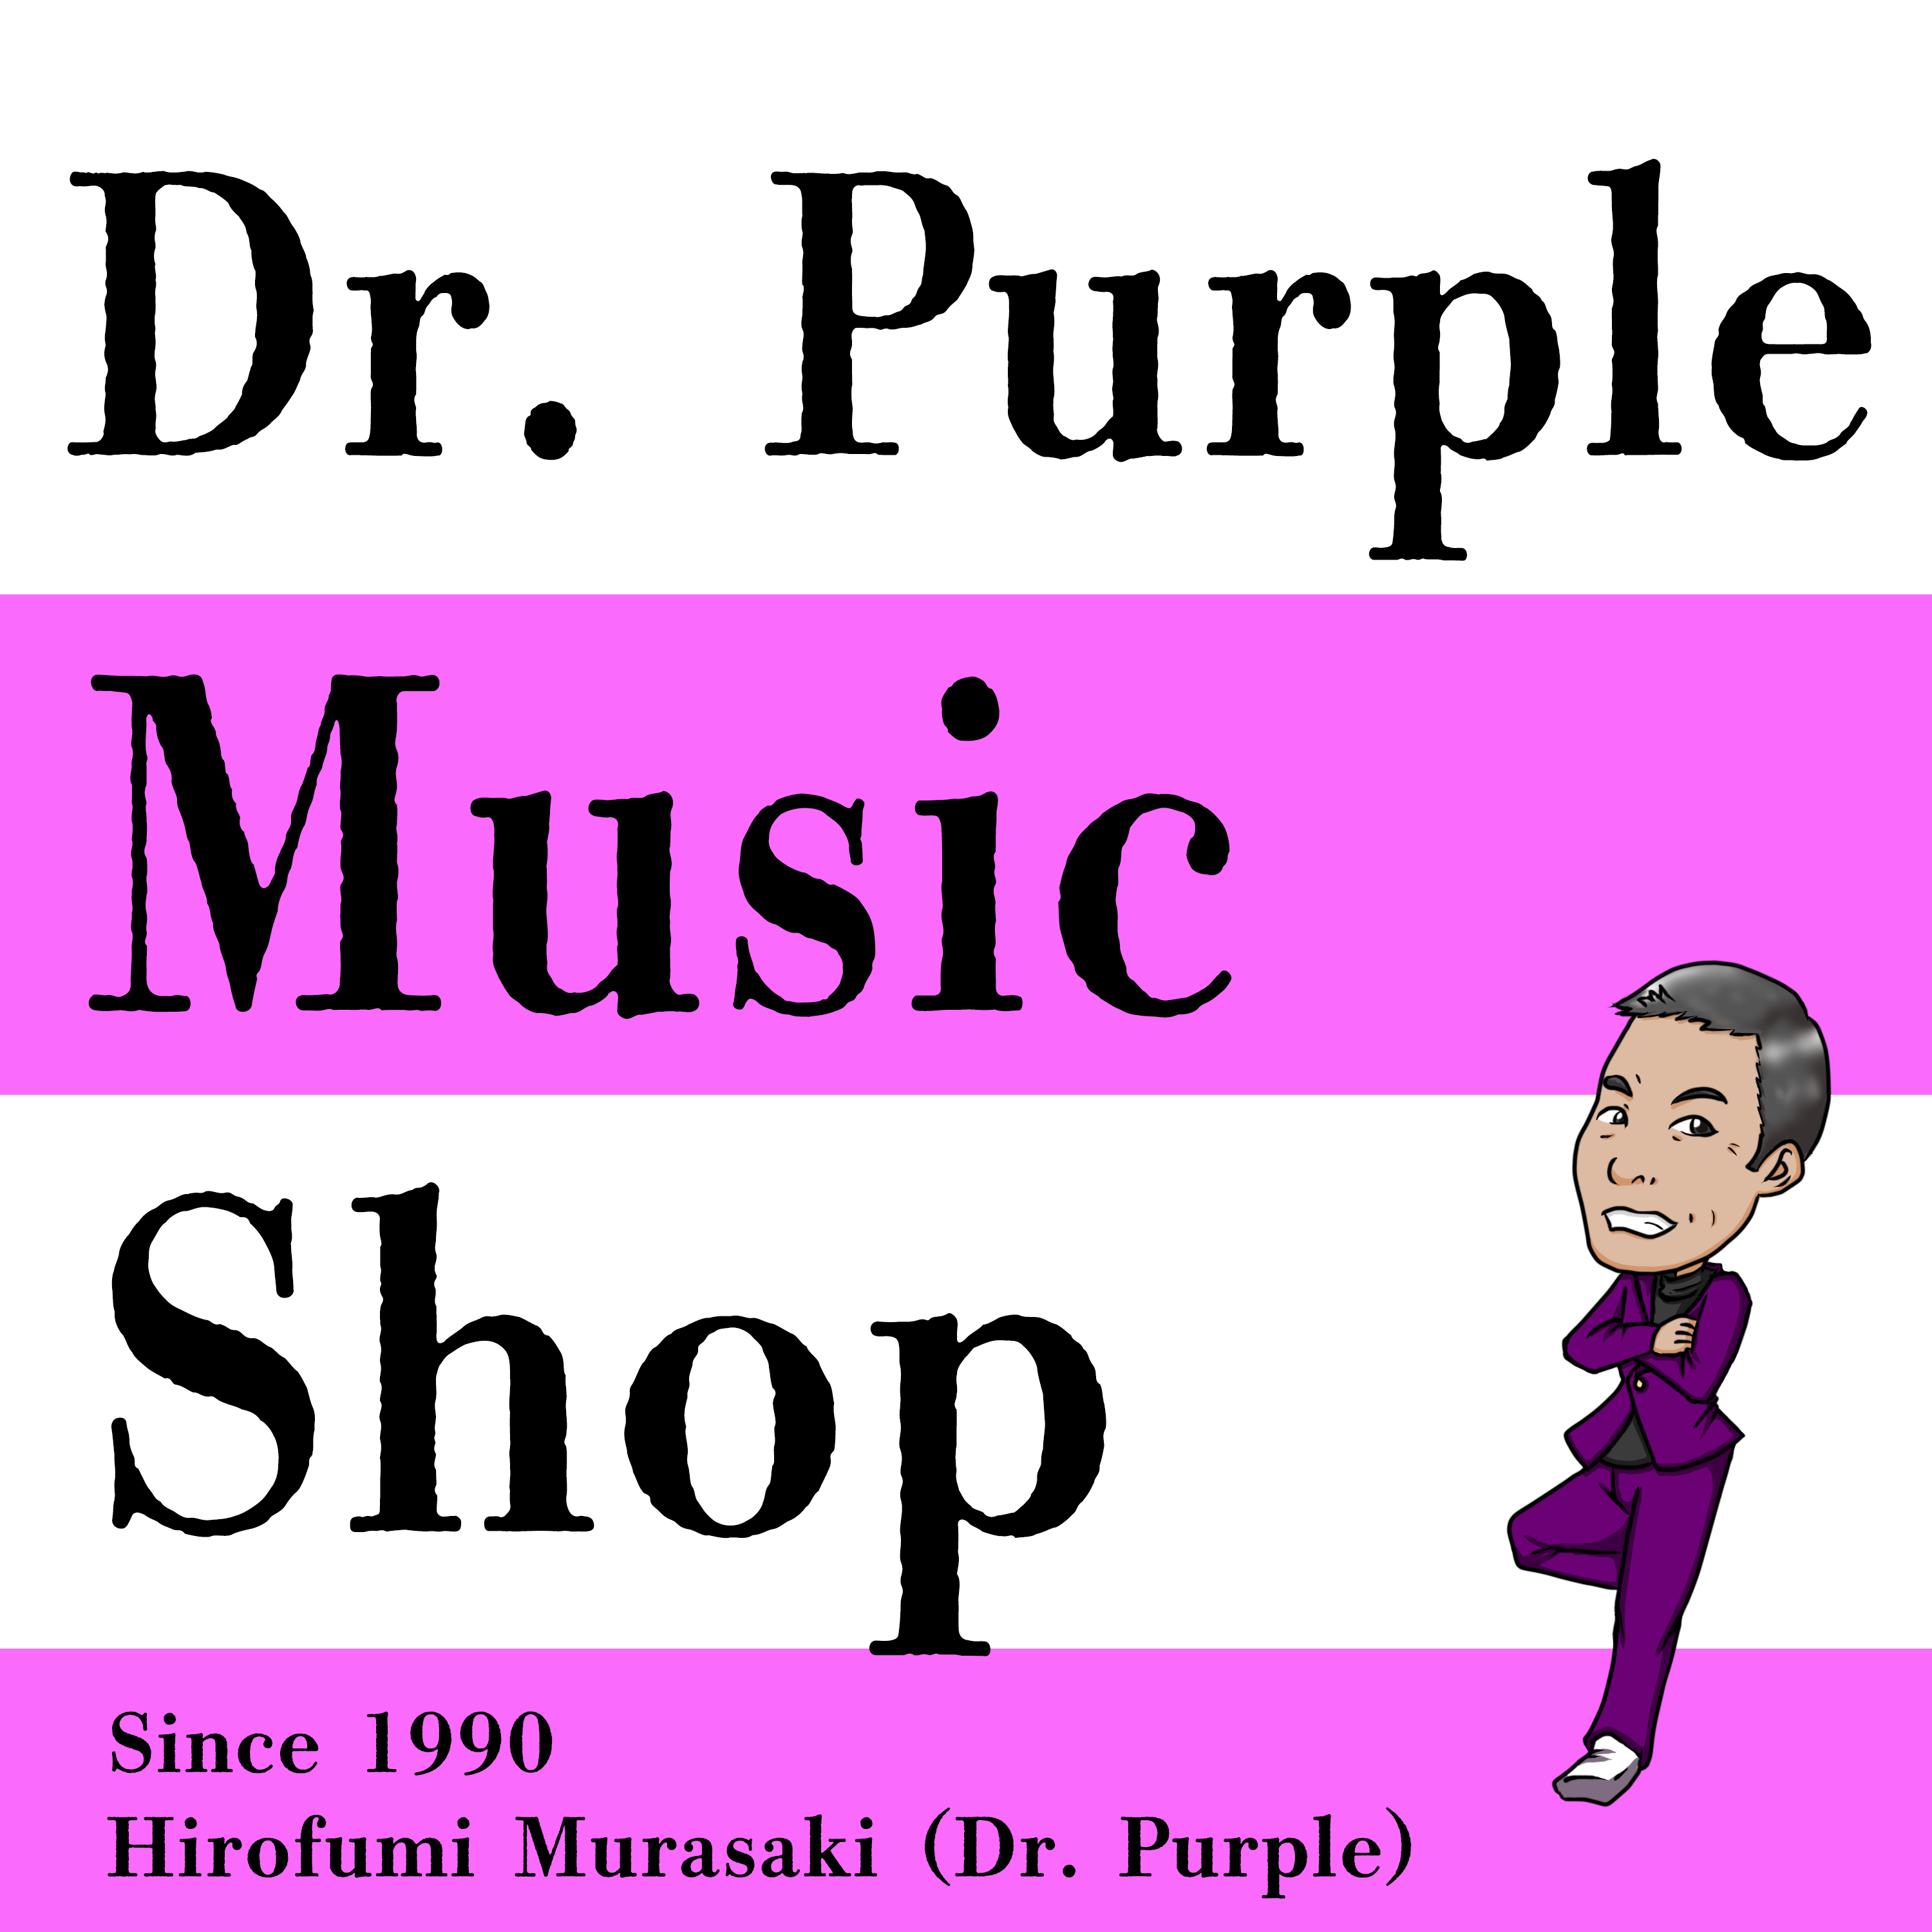 Dr. Purple music shop